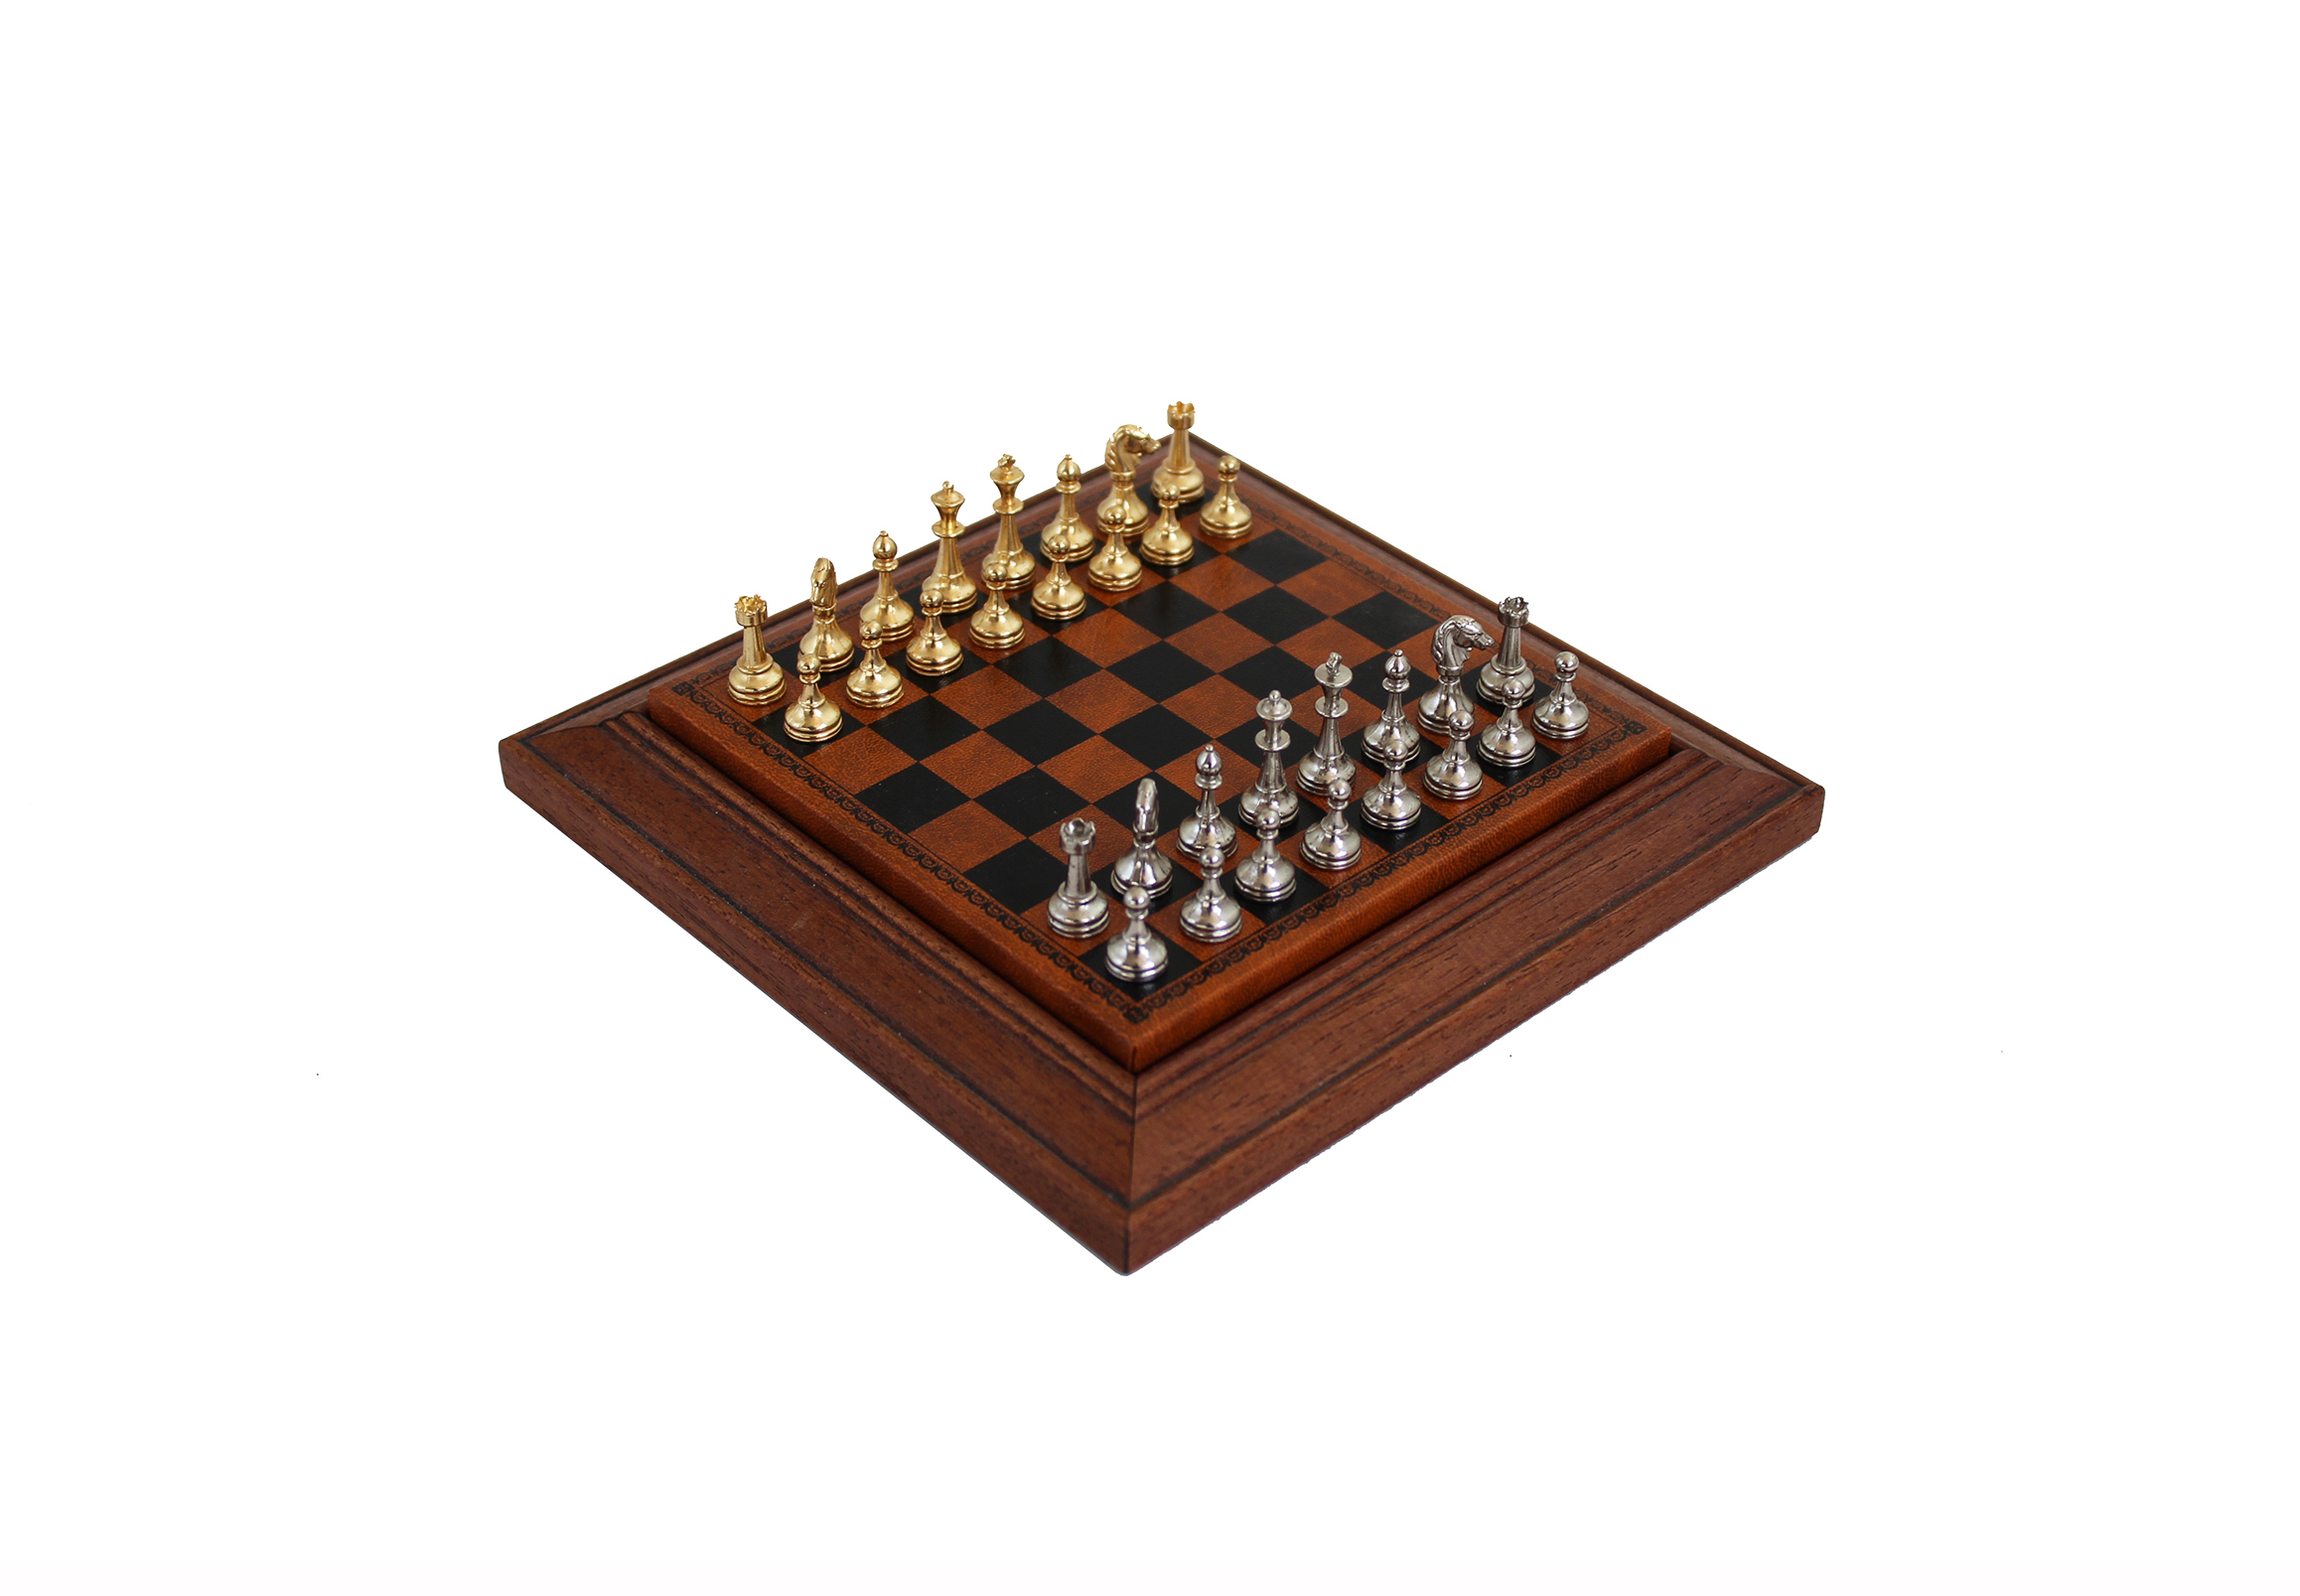 Échiquier magnétique avec pièces d'échecs - 34x34 cm - Chess King - Echecs  - Jeu